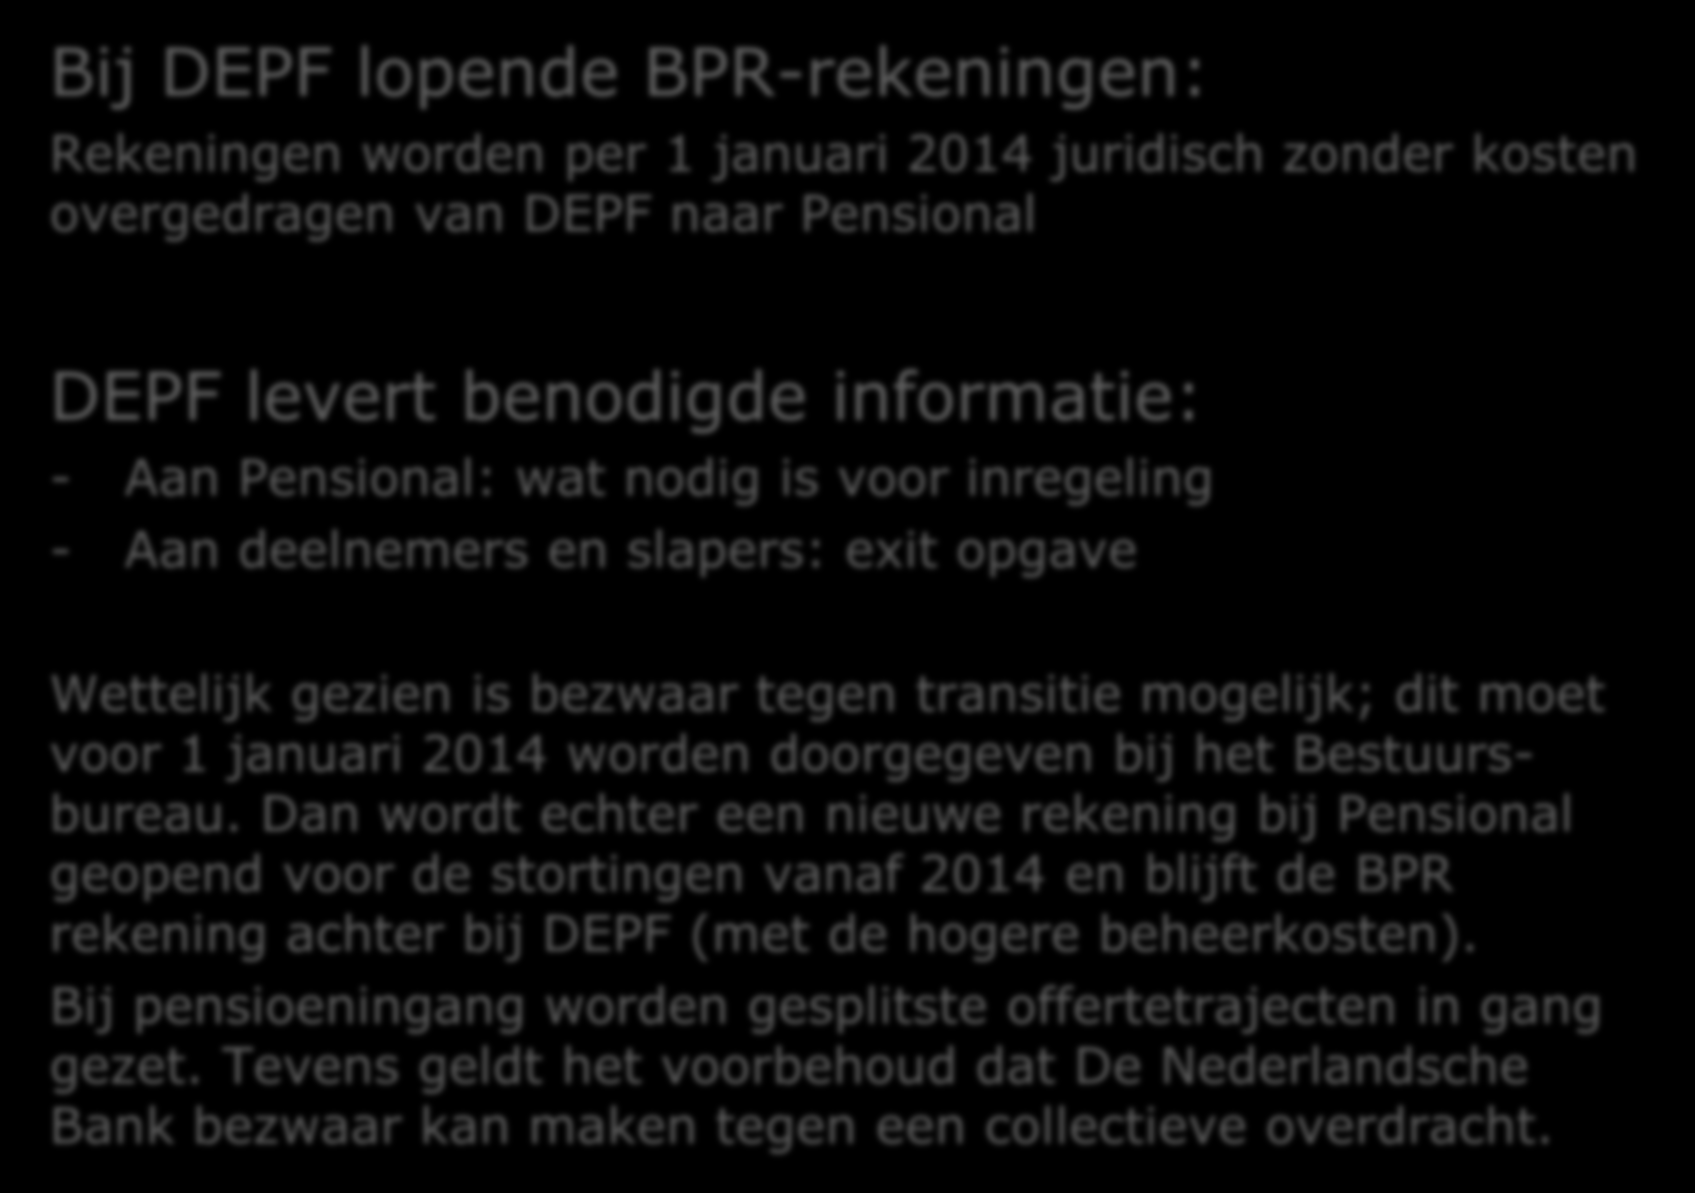 Transitie BPR rekeningen Bij DEPF lopende BPR-rekeningen: Rekeningen worden per 1 januari 2014 juridisch zonder kosten overgedragen van DEPF naar Pensional DEPF levert benodigde informatie: - Aan